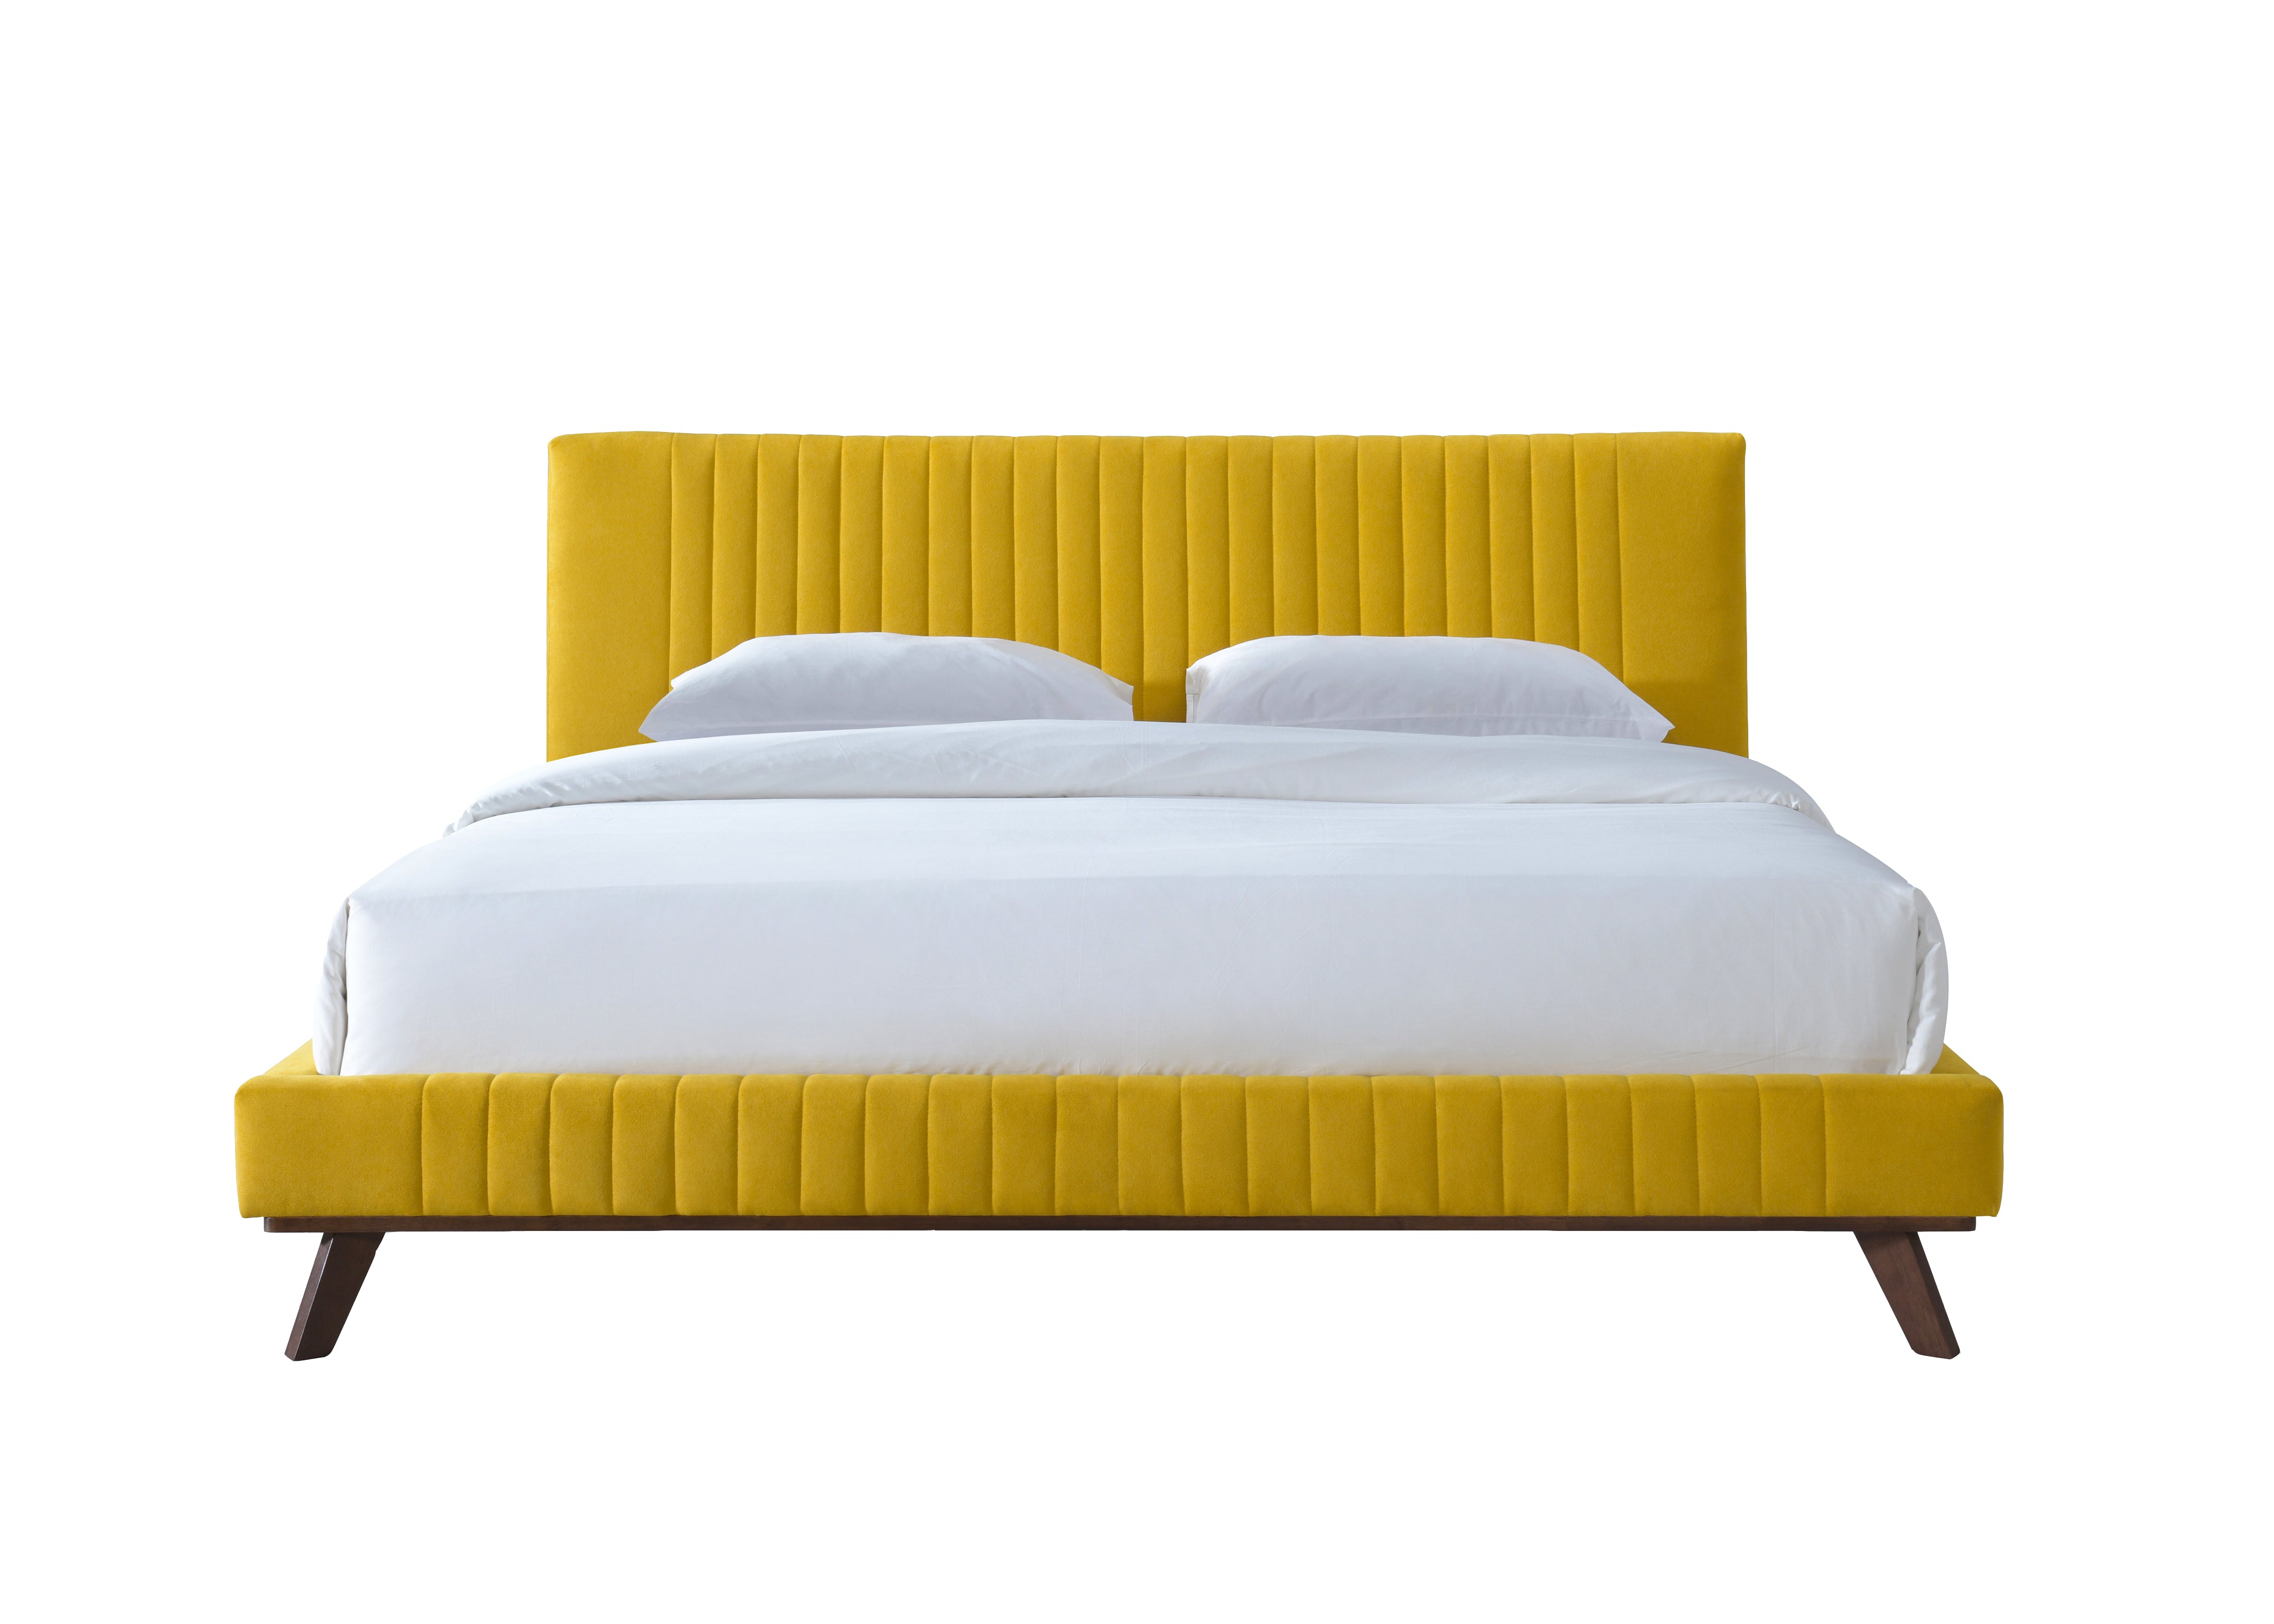 Sven Upholstered Platform Bed - King size, Mustard